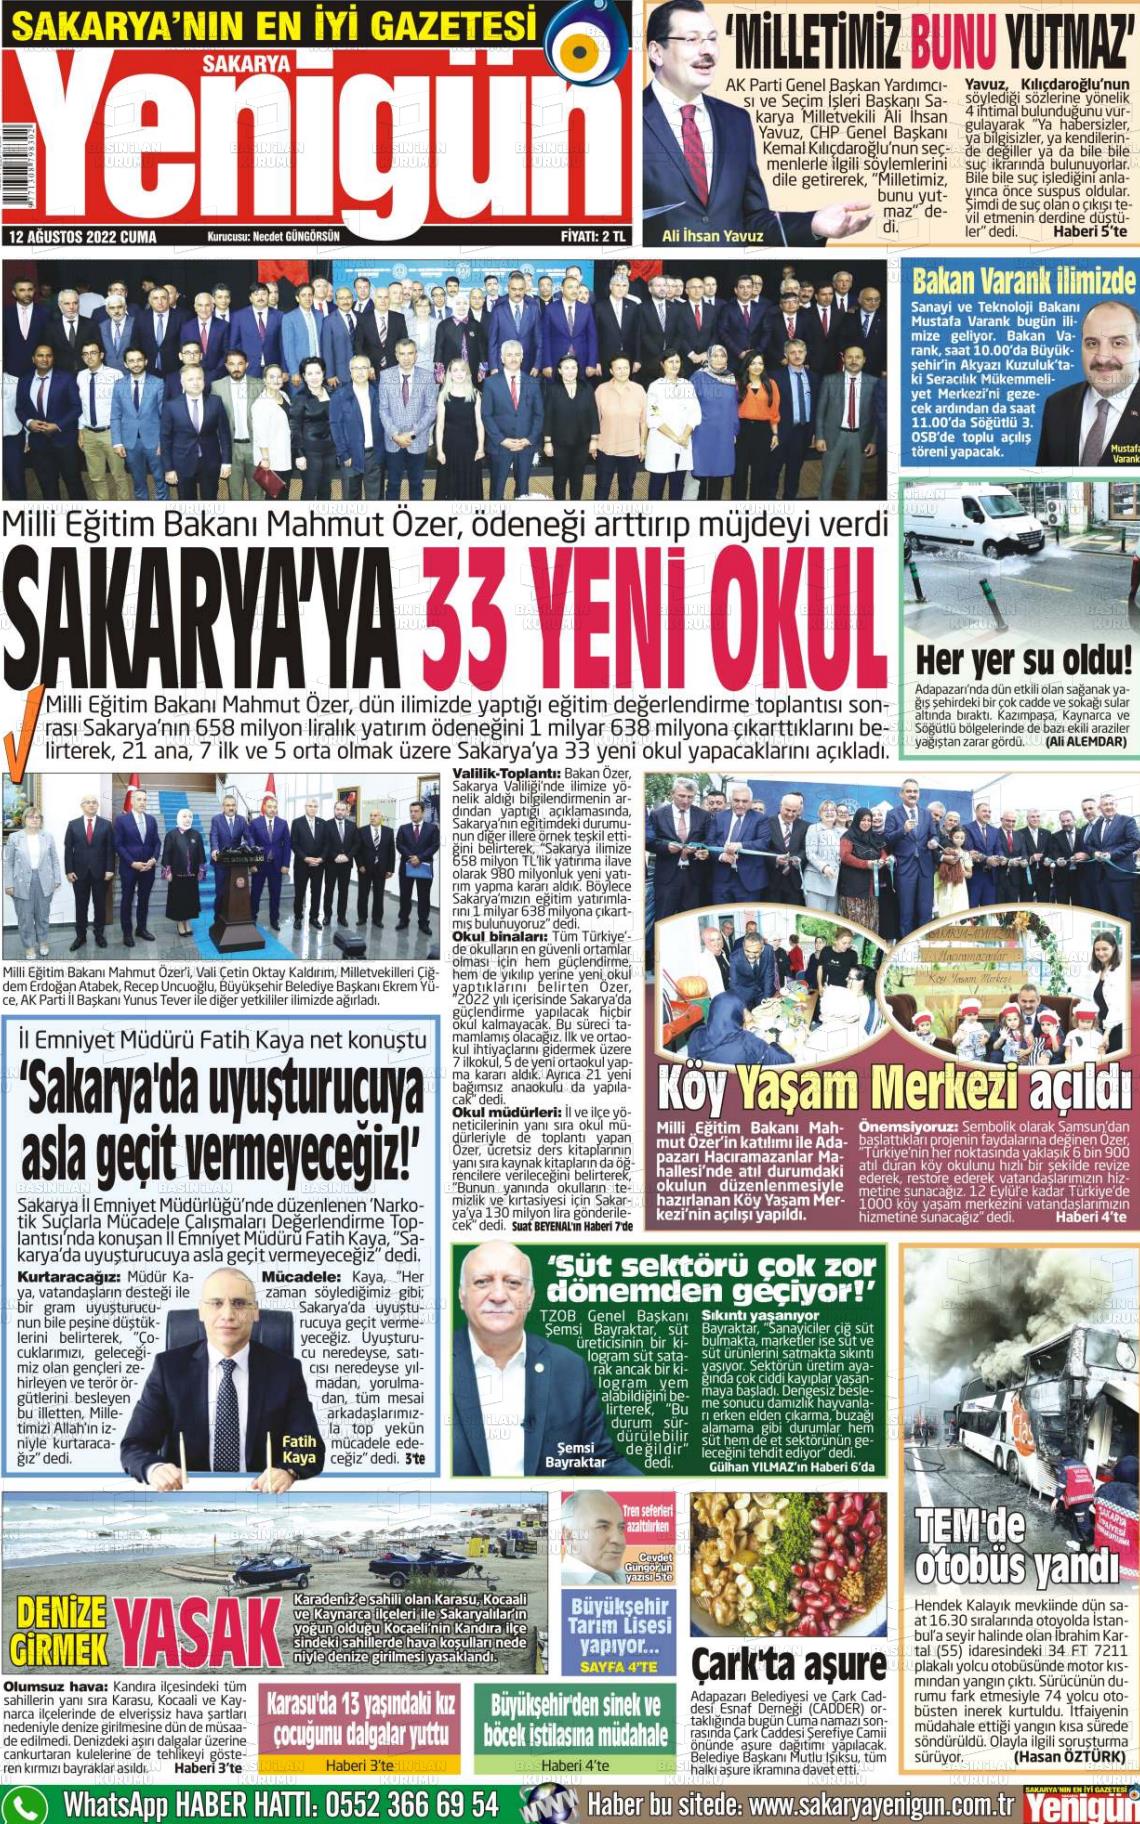 12 Ağustos 2022 Sakarya Yenigün Gazete Manşeti